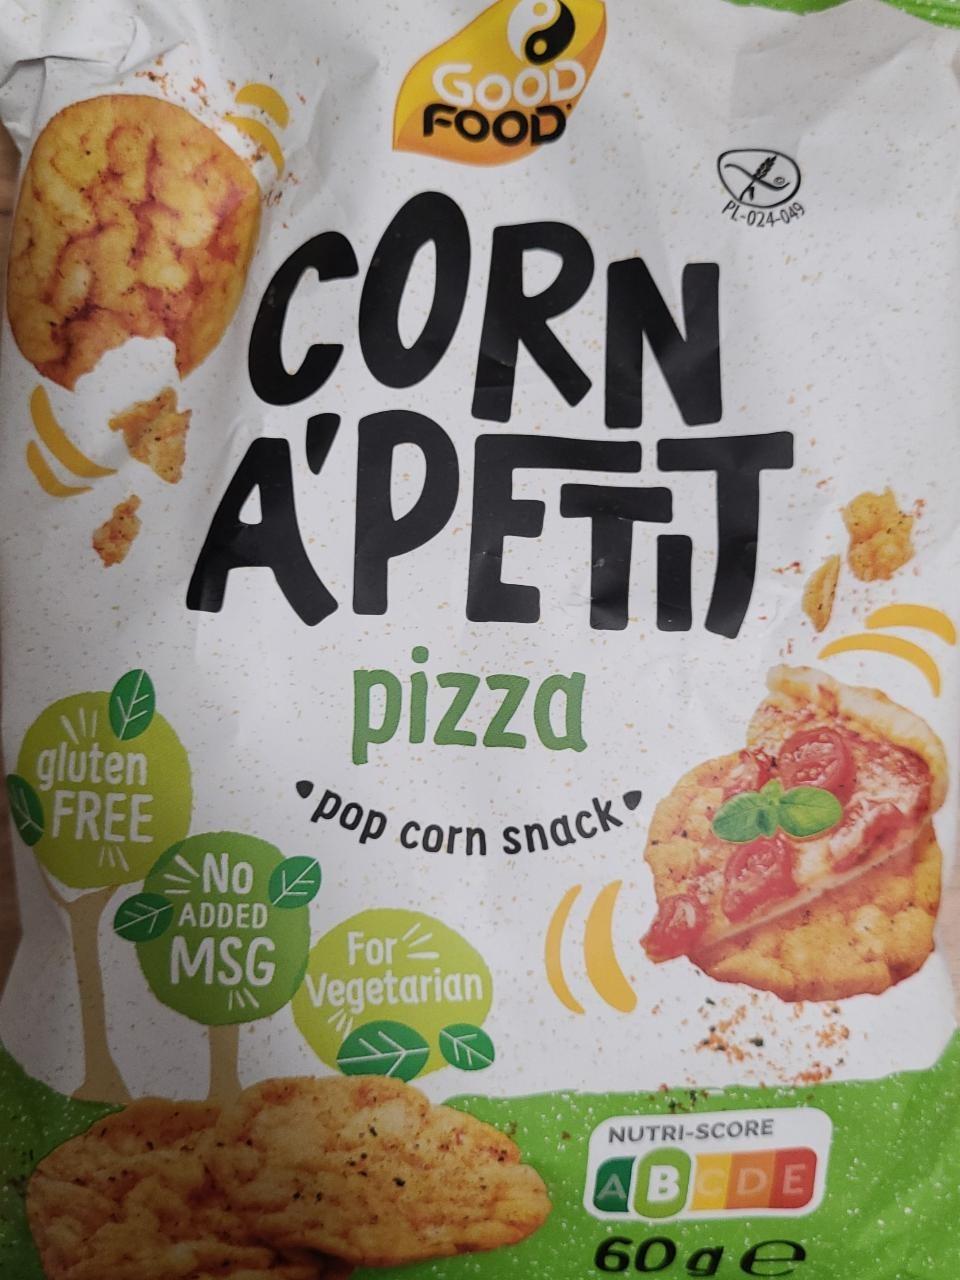 Zdjęcia - Corn A'Petit pizza pop corn snack Good Food